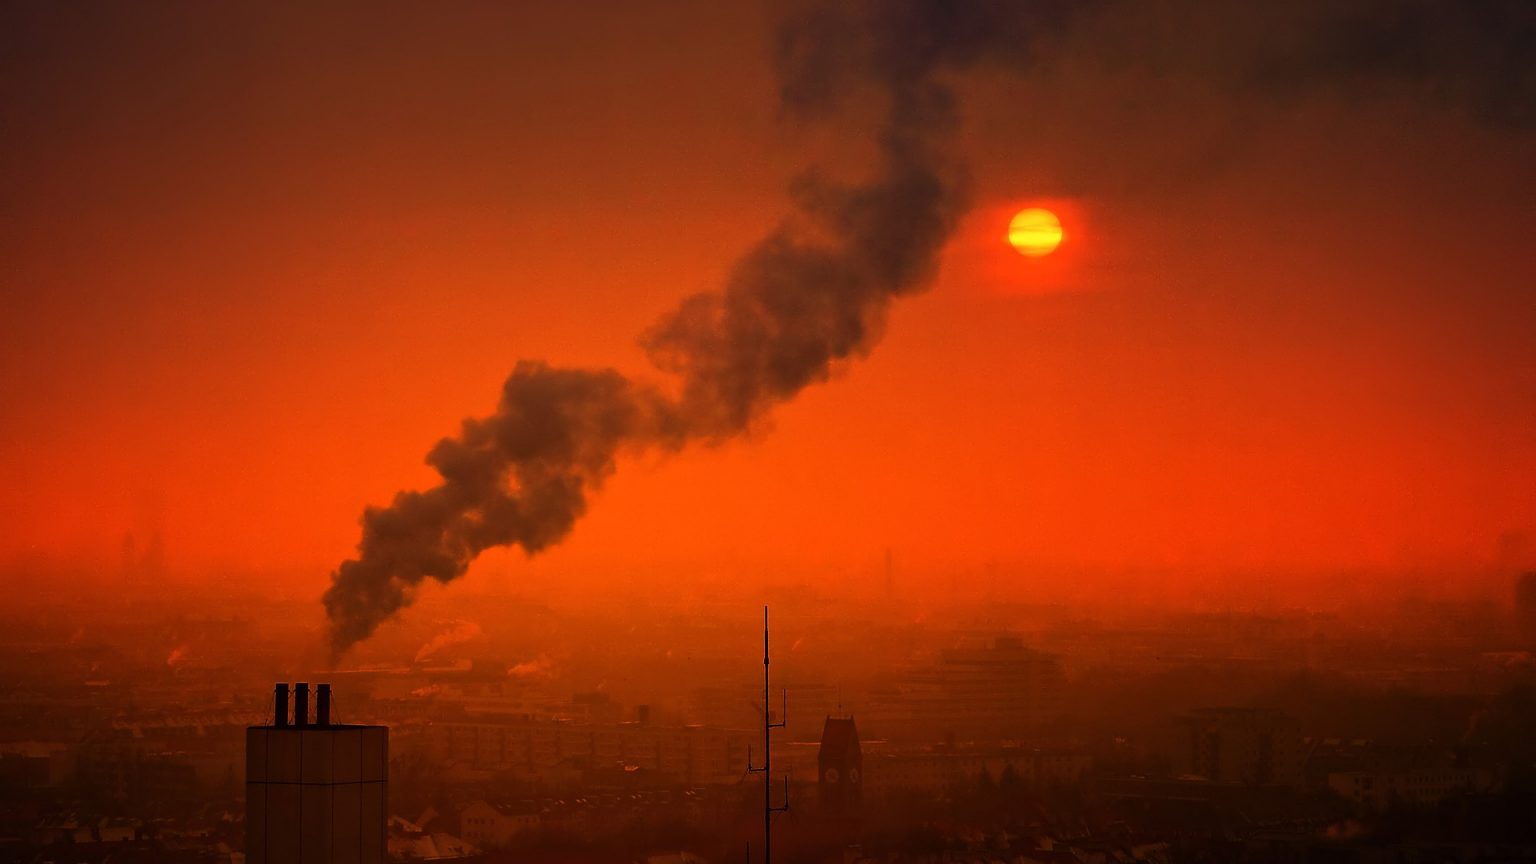 Čína má v súčasnosti viac znečistené ovzdušie ako pred koronakrízou. Prečo?